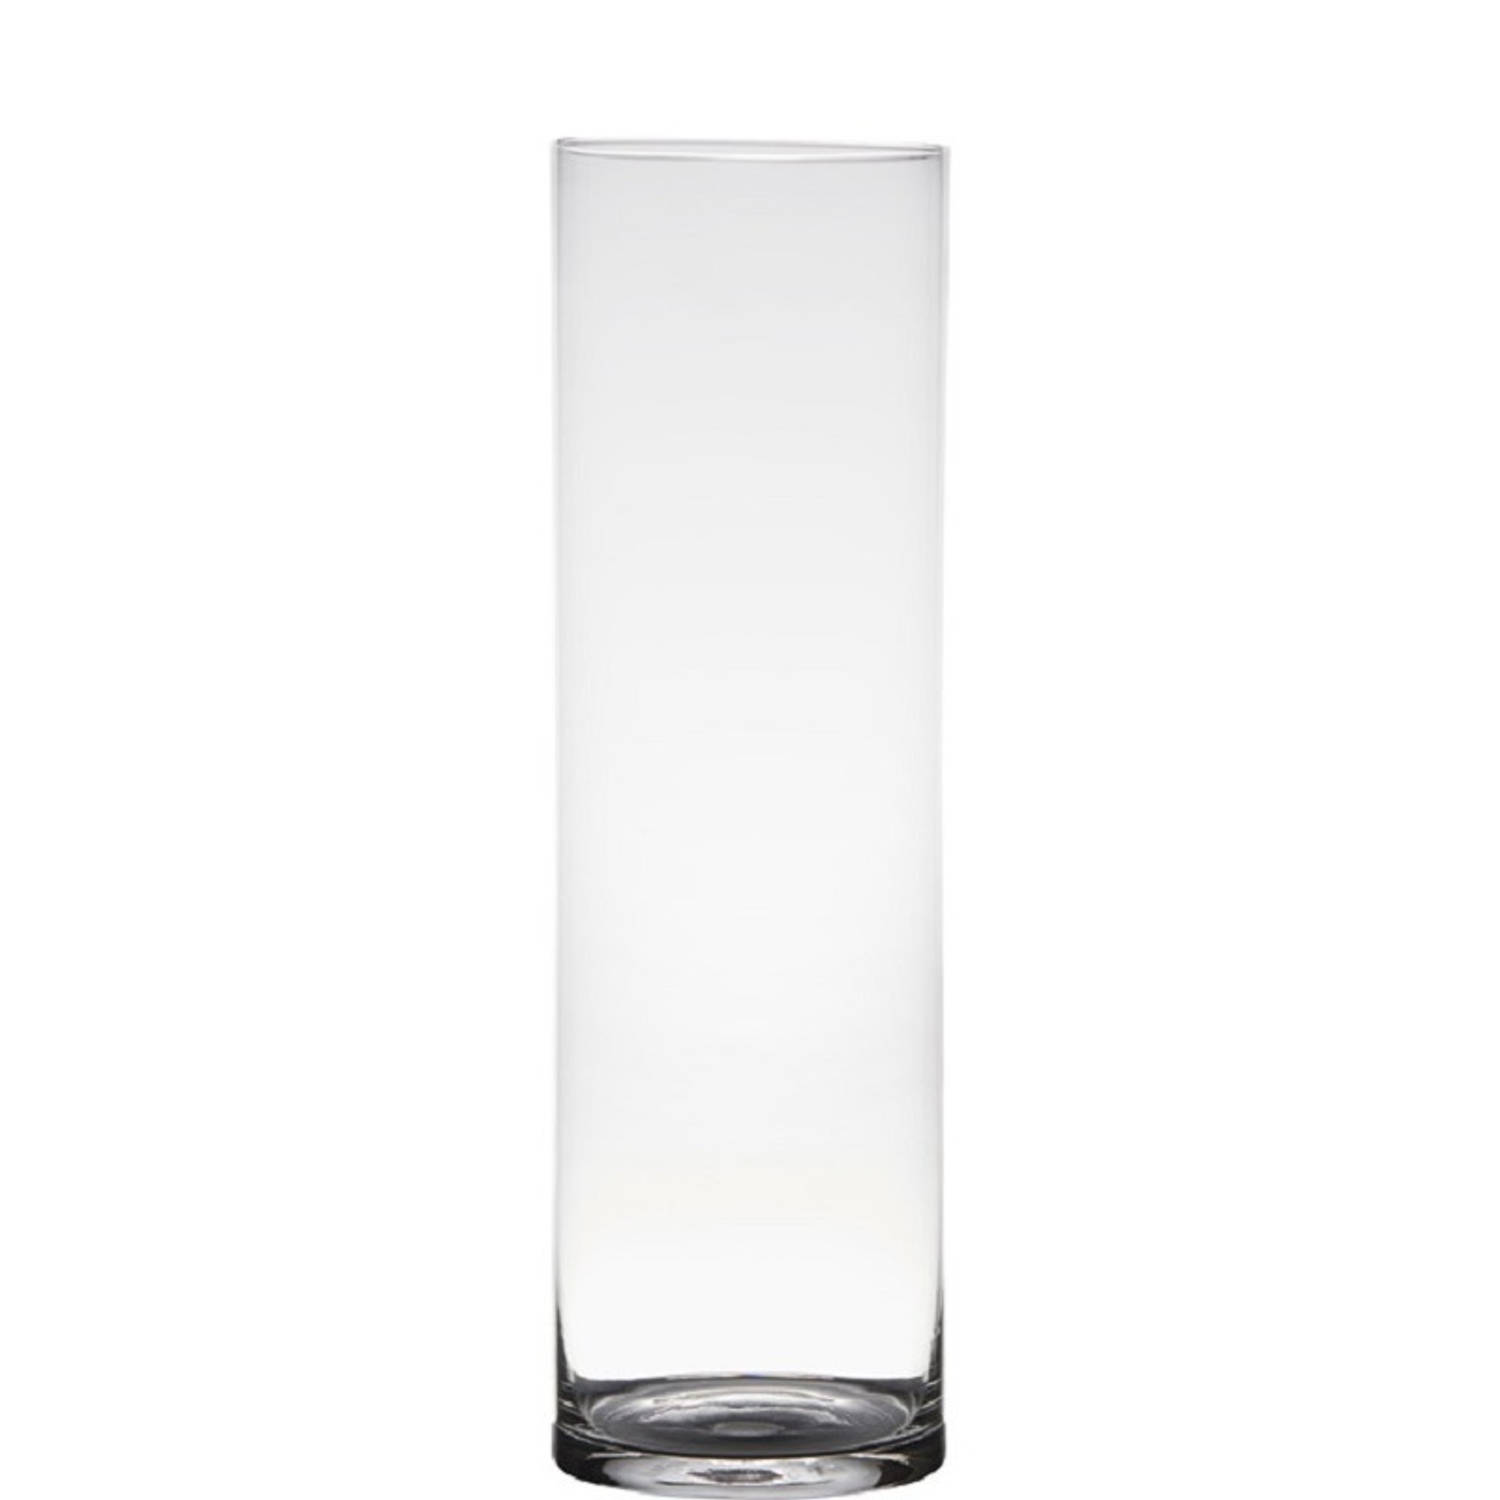 Transparante home-basics cilinder vorm vaas/vazen van glas 50 x 15 cm - Bloemen/takken/boeketten vaas voor binnen gebruik